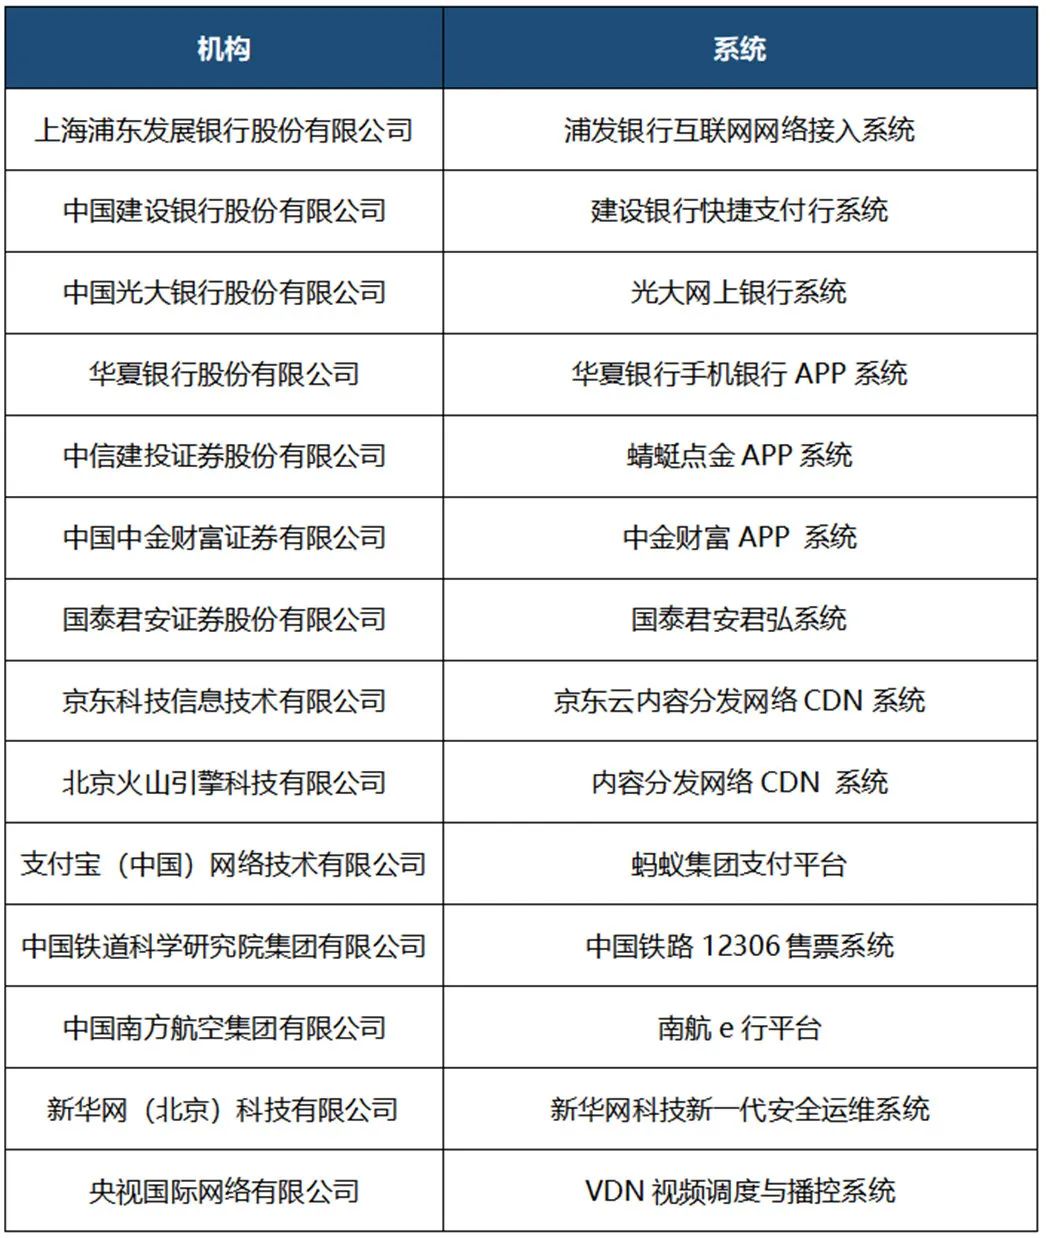 中国信通院首批“STAR”数据系统稳定性评估结果公布-第5张图片-网盾网络安全培训